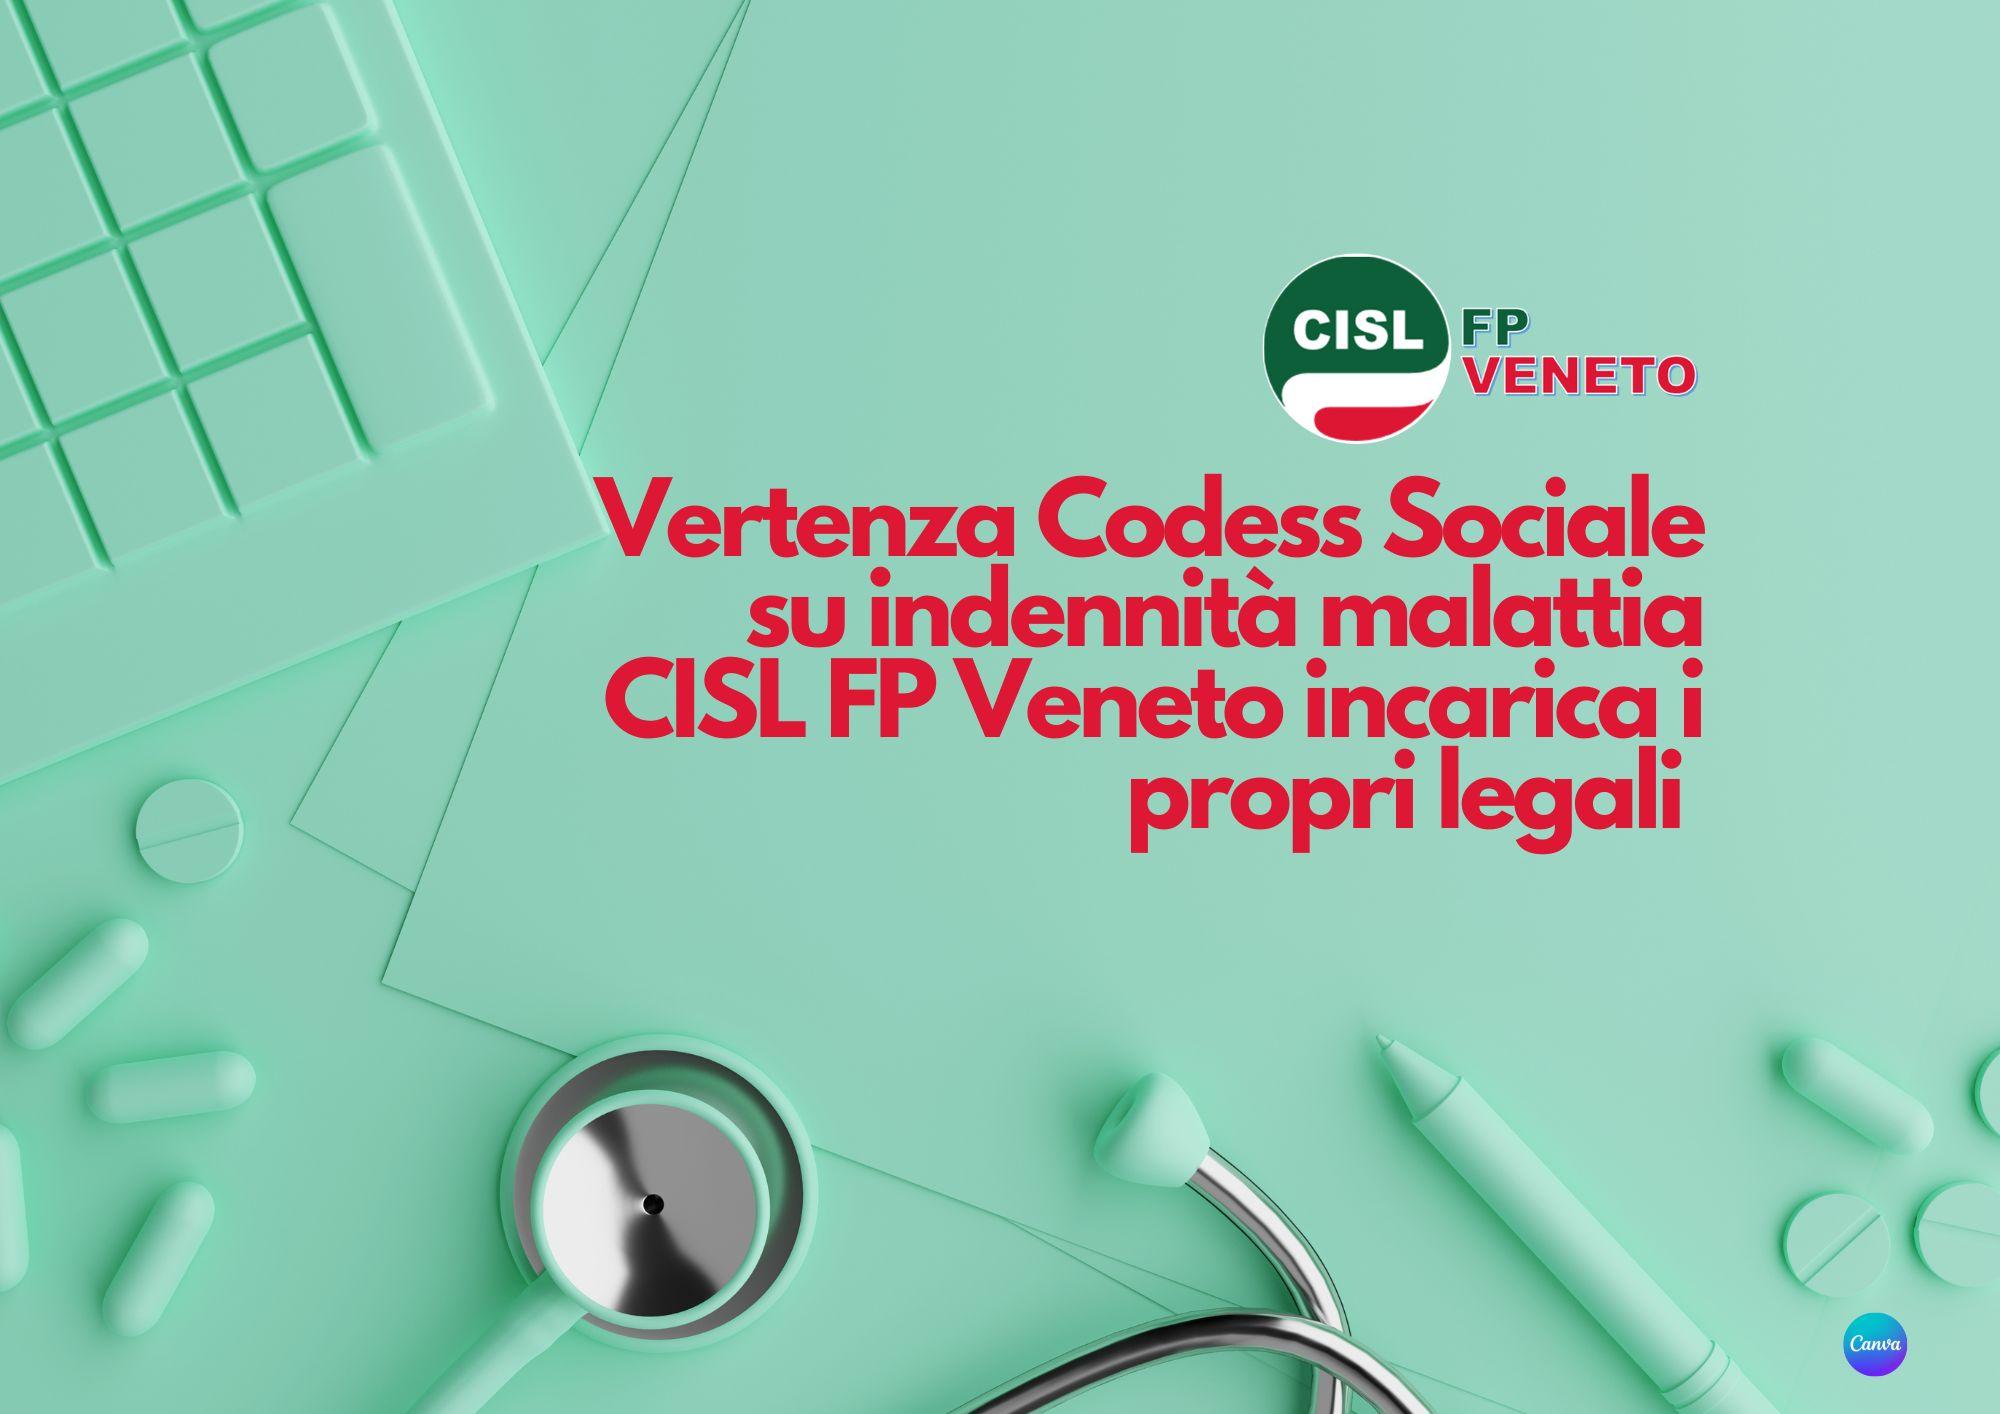 CISL FP Veneto. Vertenza Codess Sociale su indennità malattia. La CISL FP ha dato mandato ai propri legali